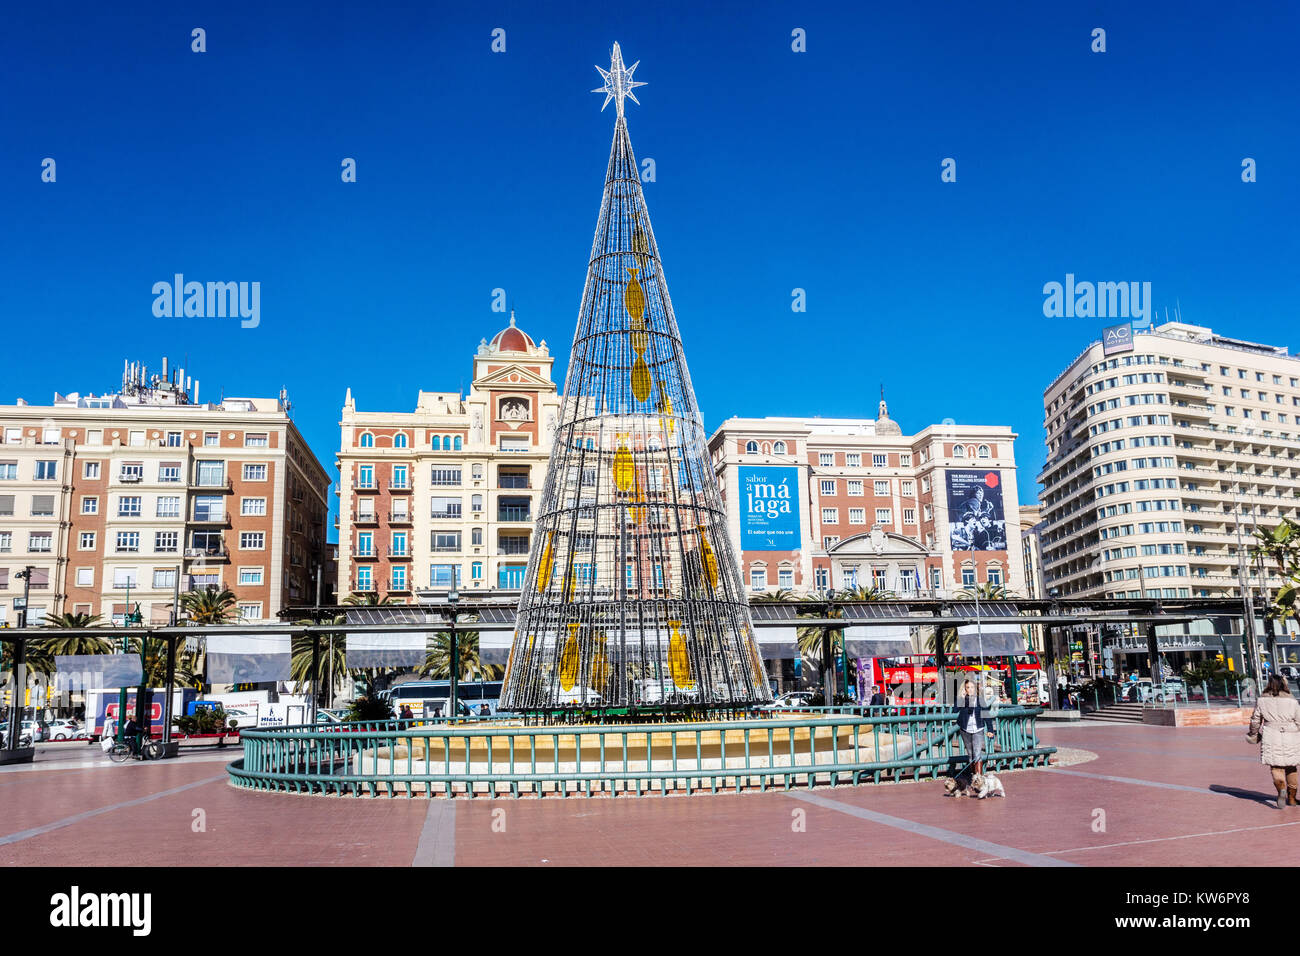 Malaga, Christmas Tree on Plaze de la Marina, Spain Stock Photo